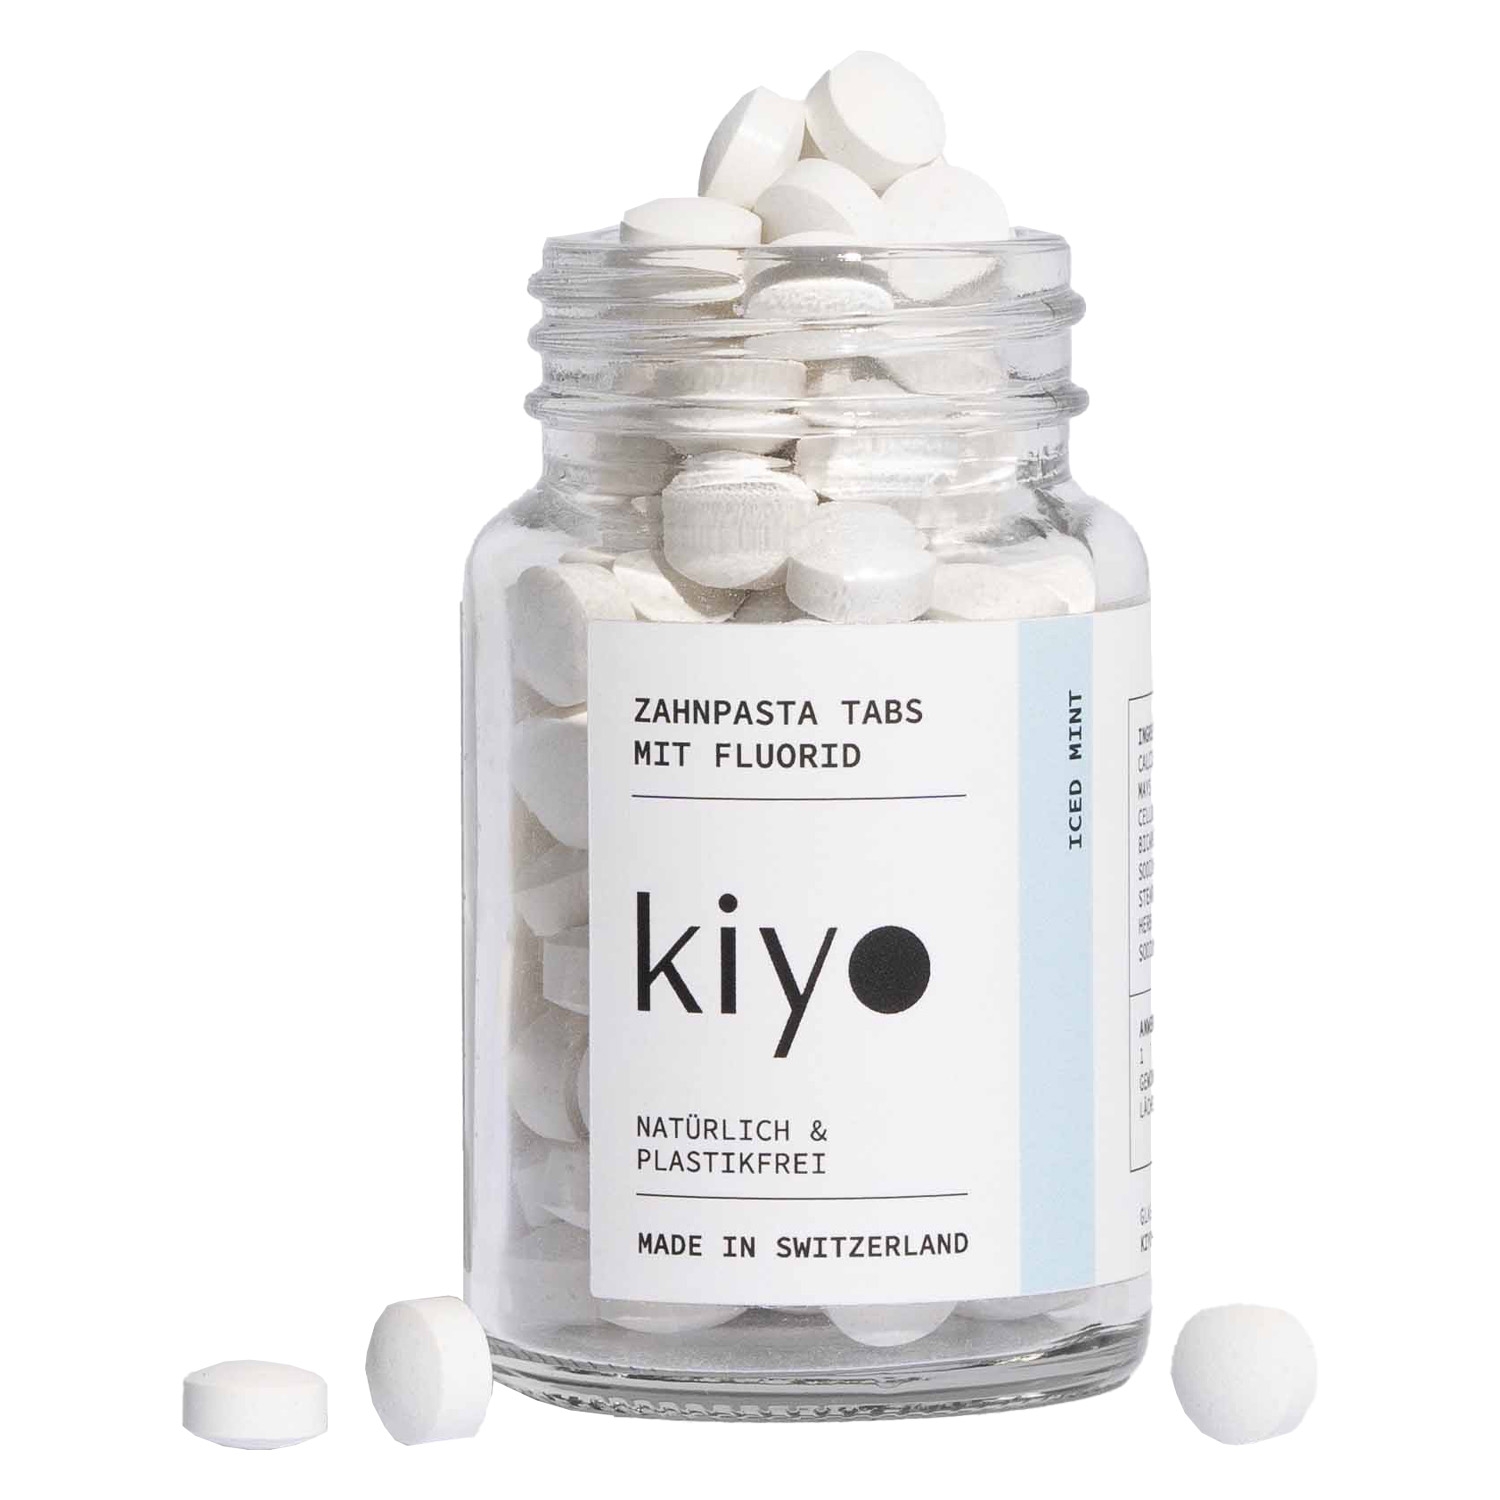 Produktbild von Kiyo - Zanpasta Tabs Iced Mint